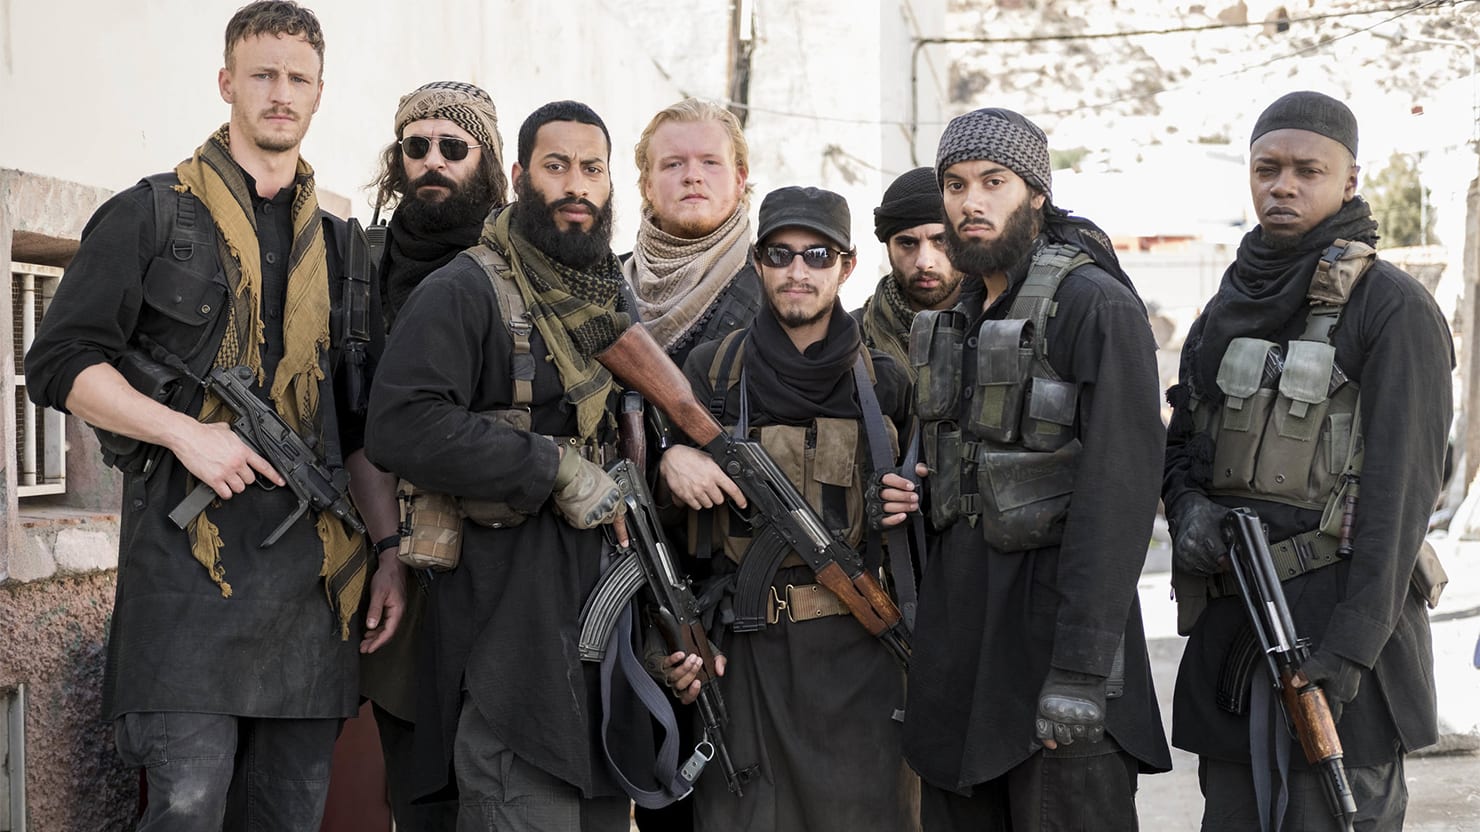 Фото игиловцев. Джейш Аль Ахрар. Террористическая группировка «Исламское государство» в Сирии.